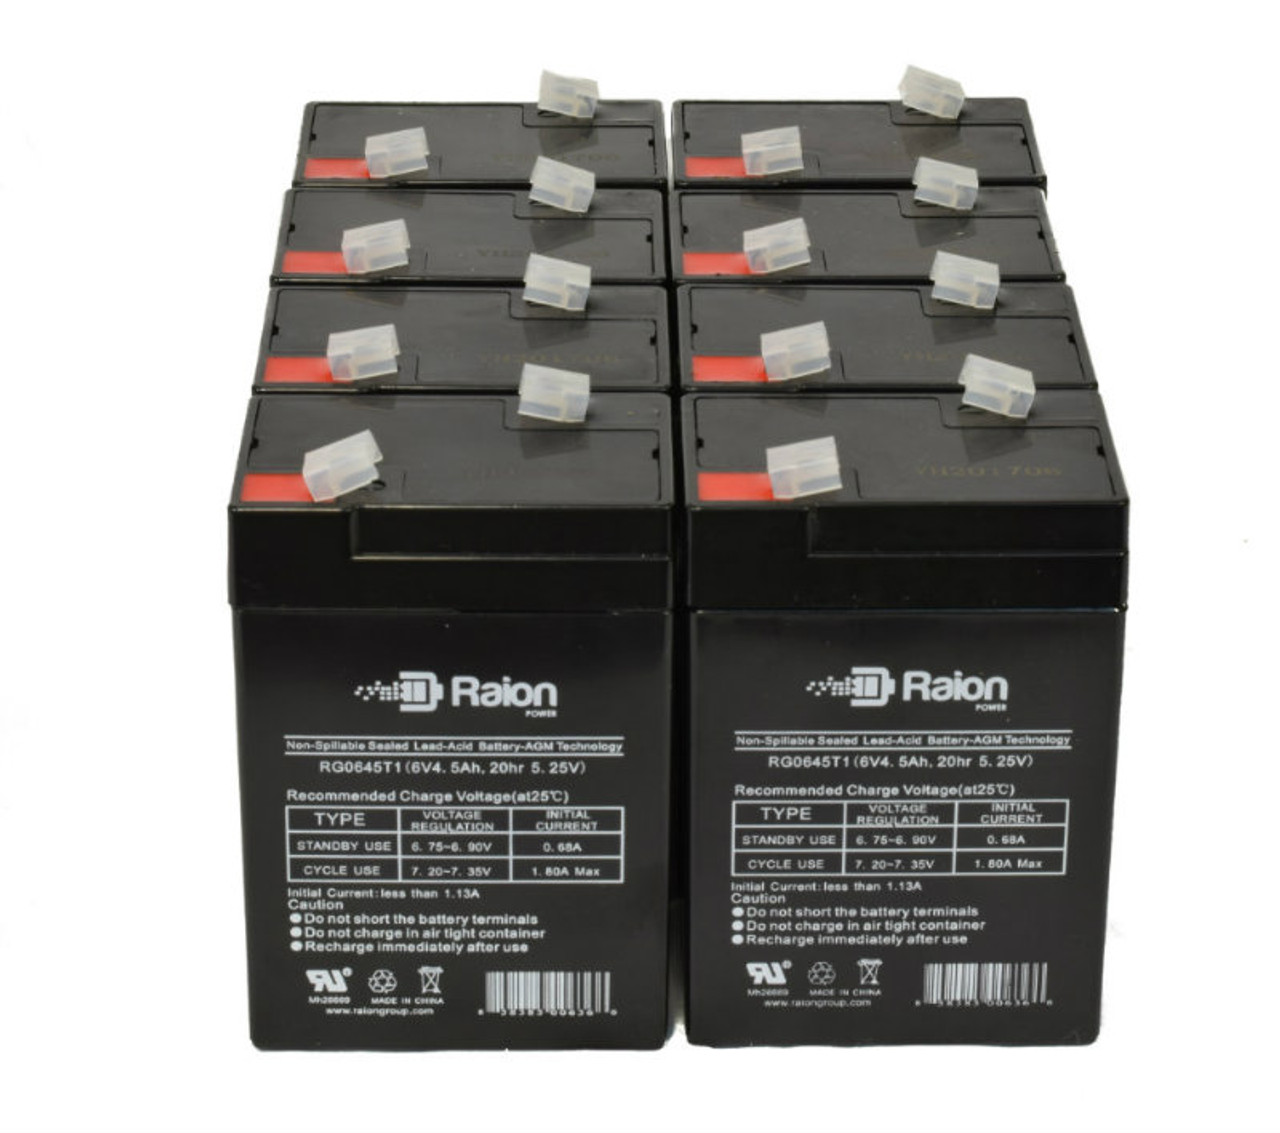 Raion Power 6V 4.5Ah Replacement Emergency Light Battery for Tork UB645-6V - 8 Pack